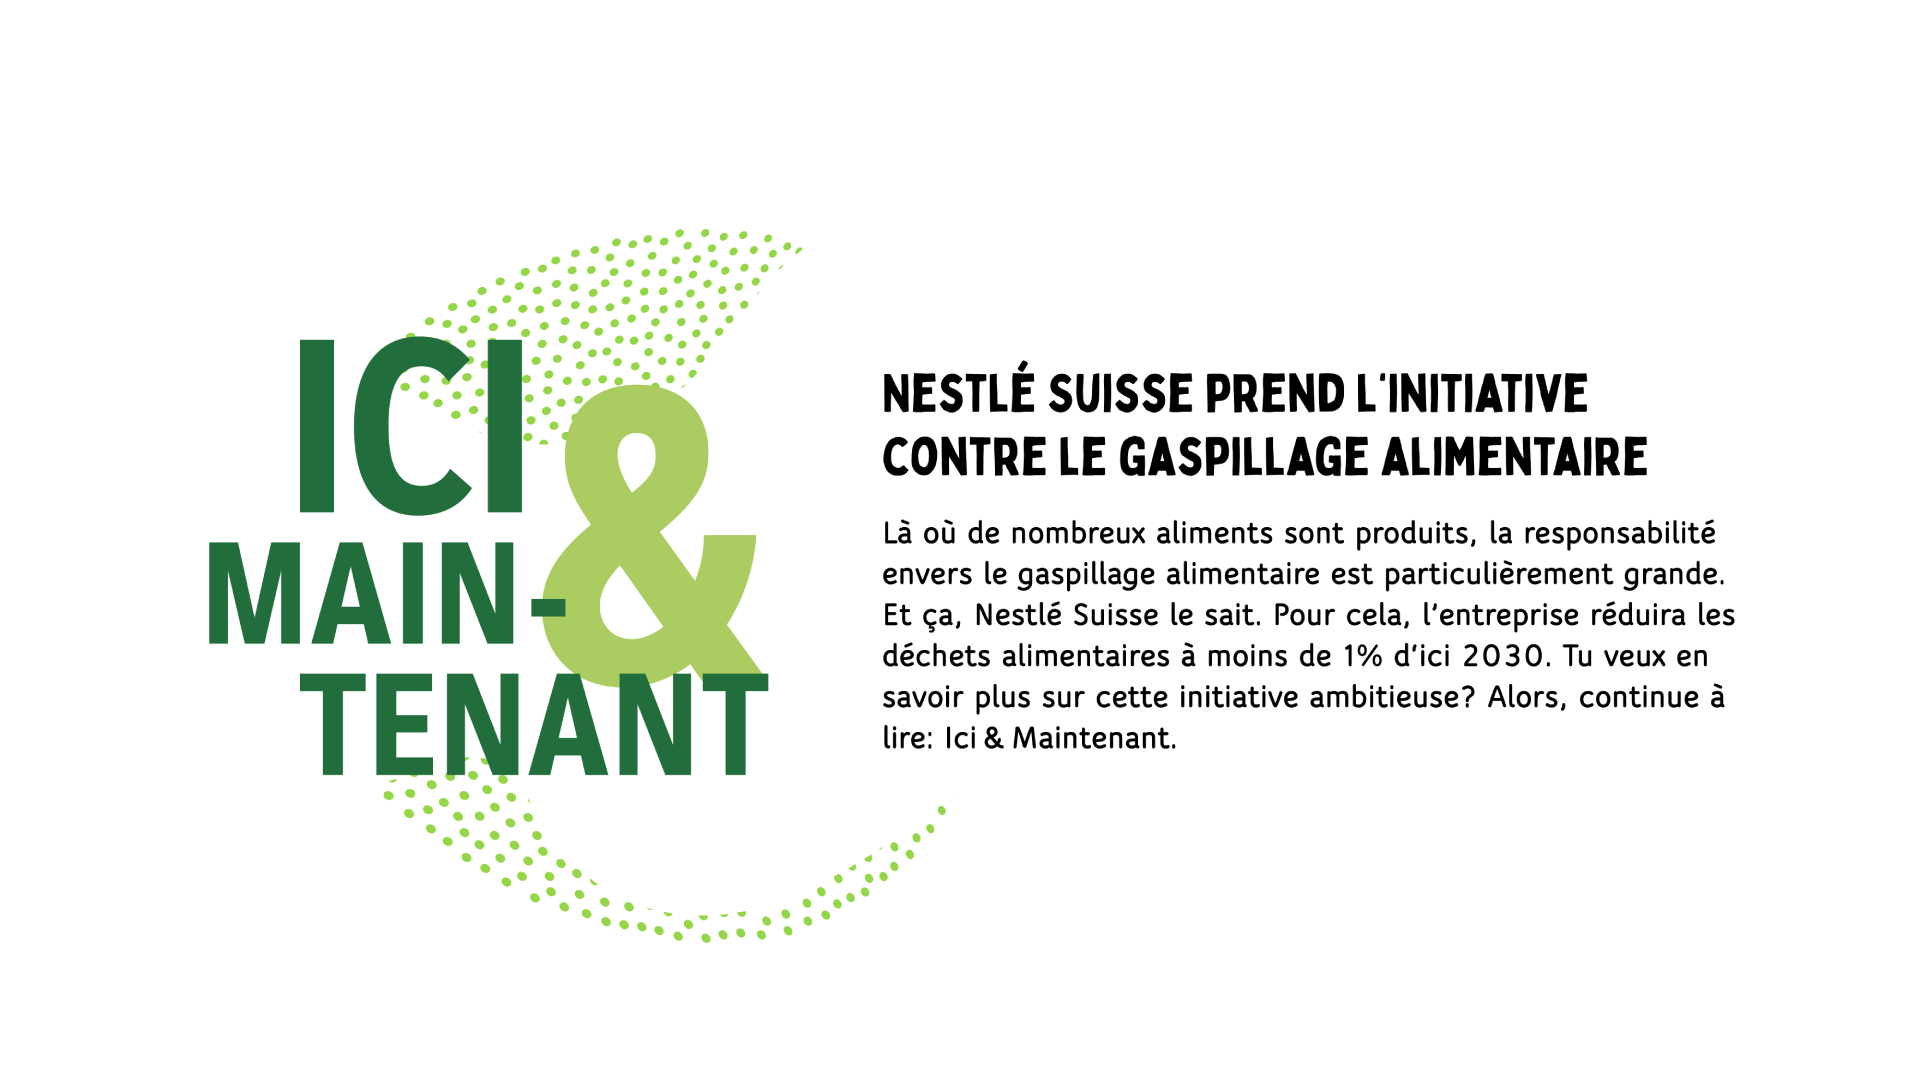 Nestlé suisse prend l'initiative contre le gaspillage alimentaire